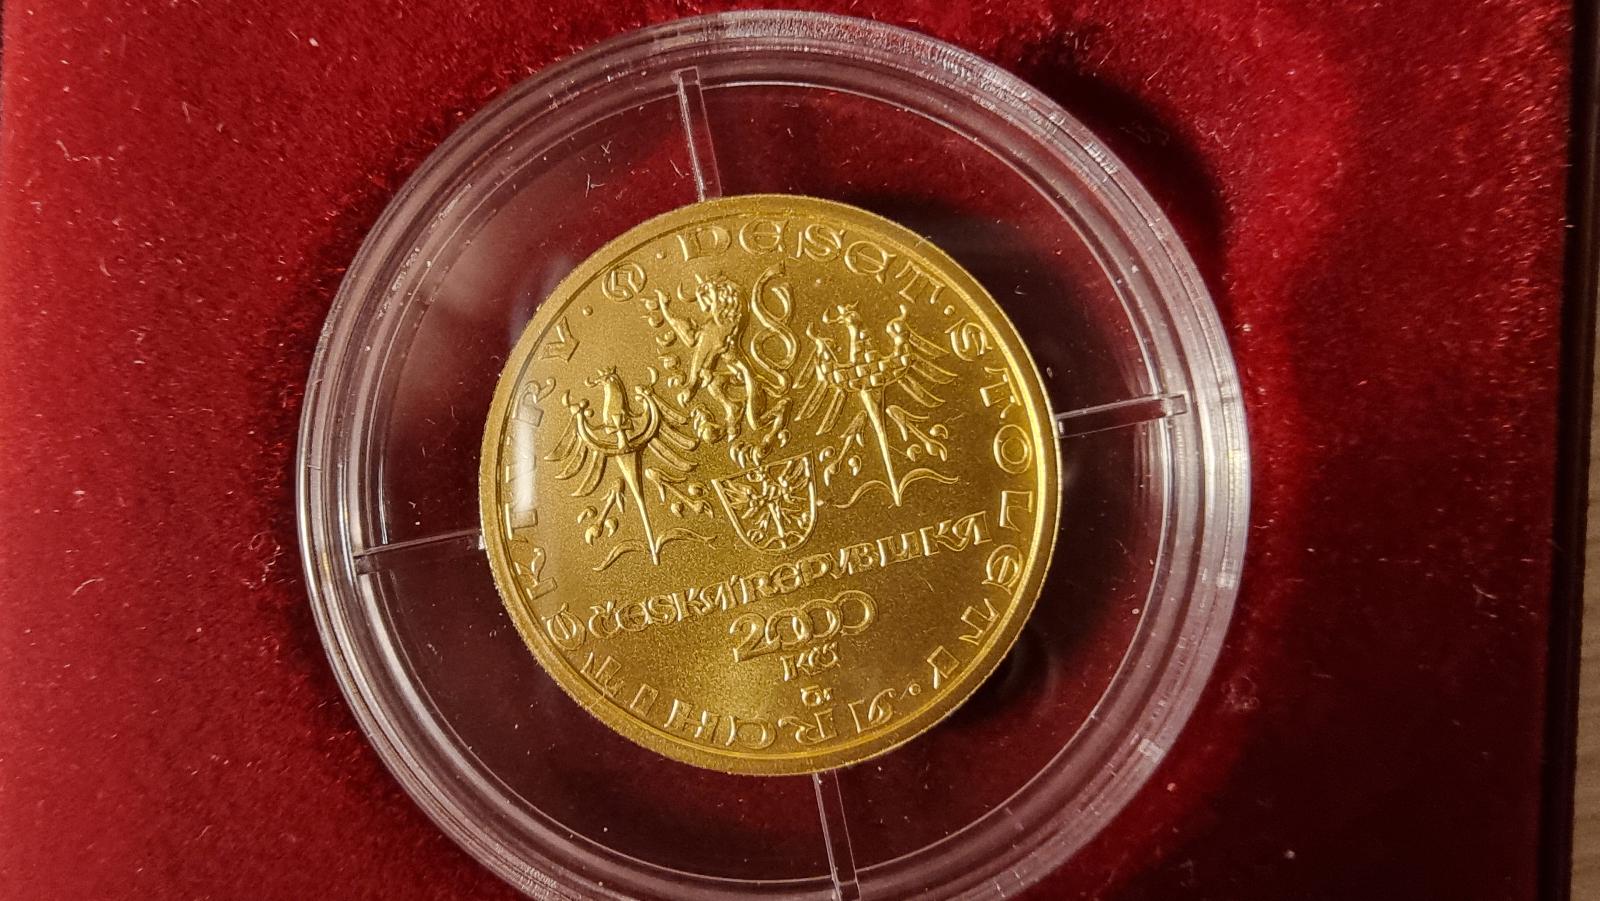 PZM - Zlatá mince 2000Kč rotunda ve Znojmě 2001 BK. RRR! - Numismatika